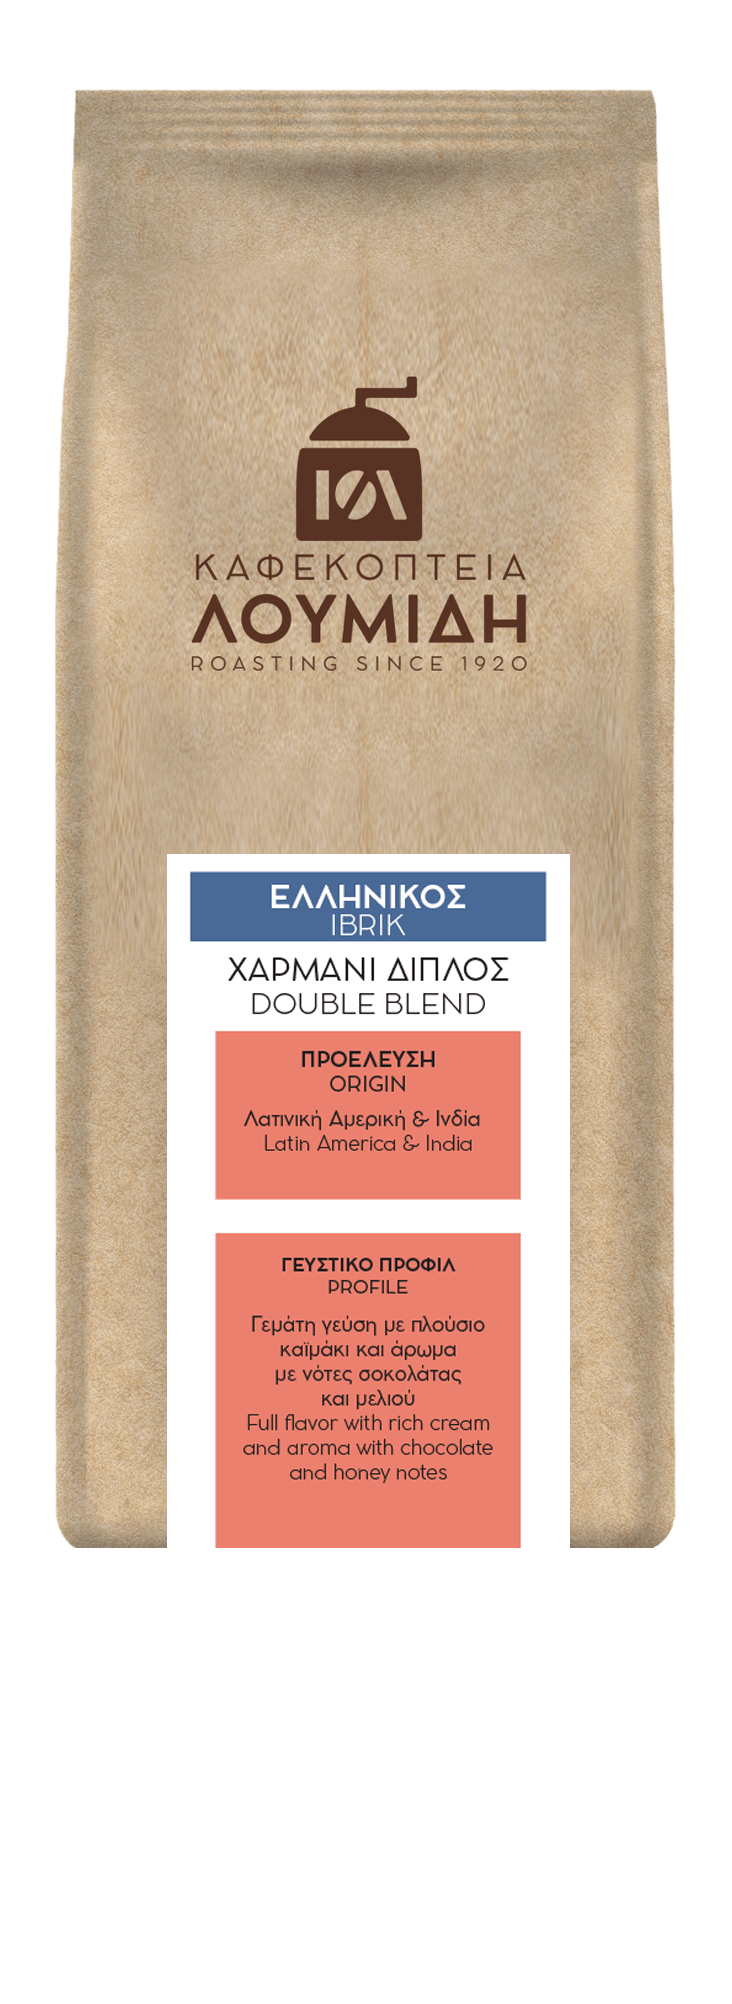 Ελληνικός Χαρμάνι Διπλός | 200γρ - Καφεκοπτεία Λουμίδη